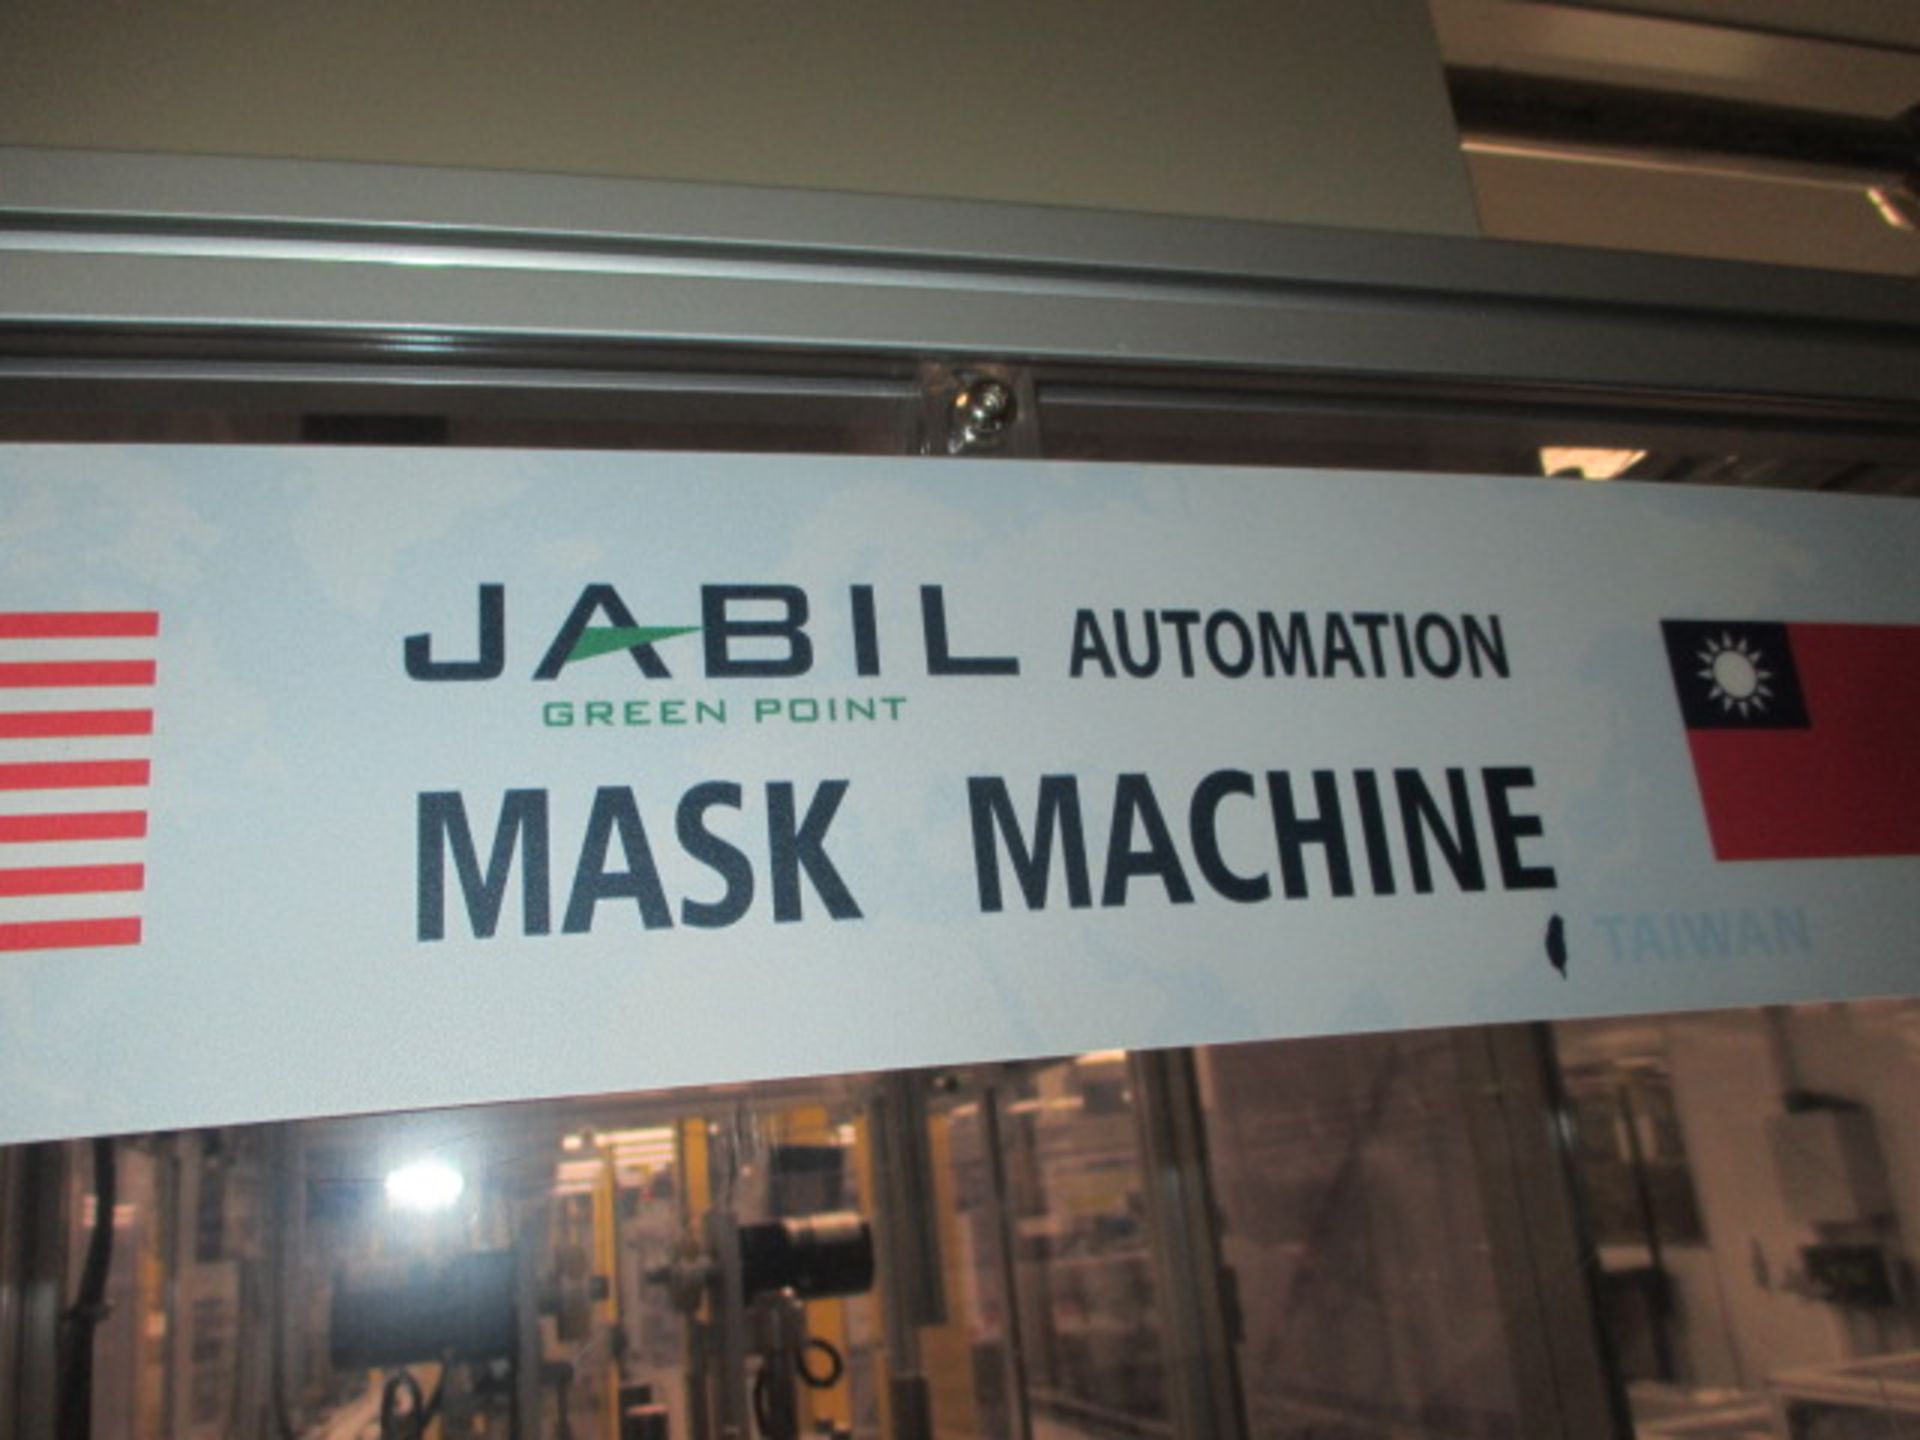 Jabil Mask Machine - Image 15 of 15